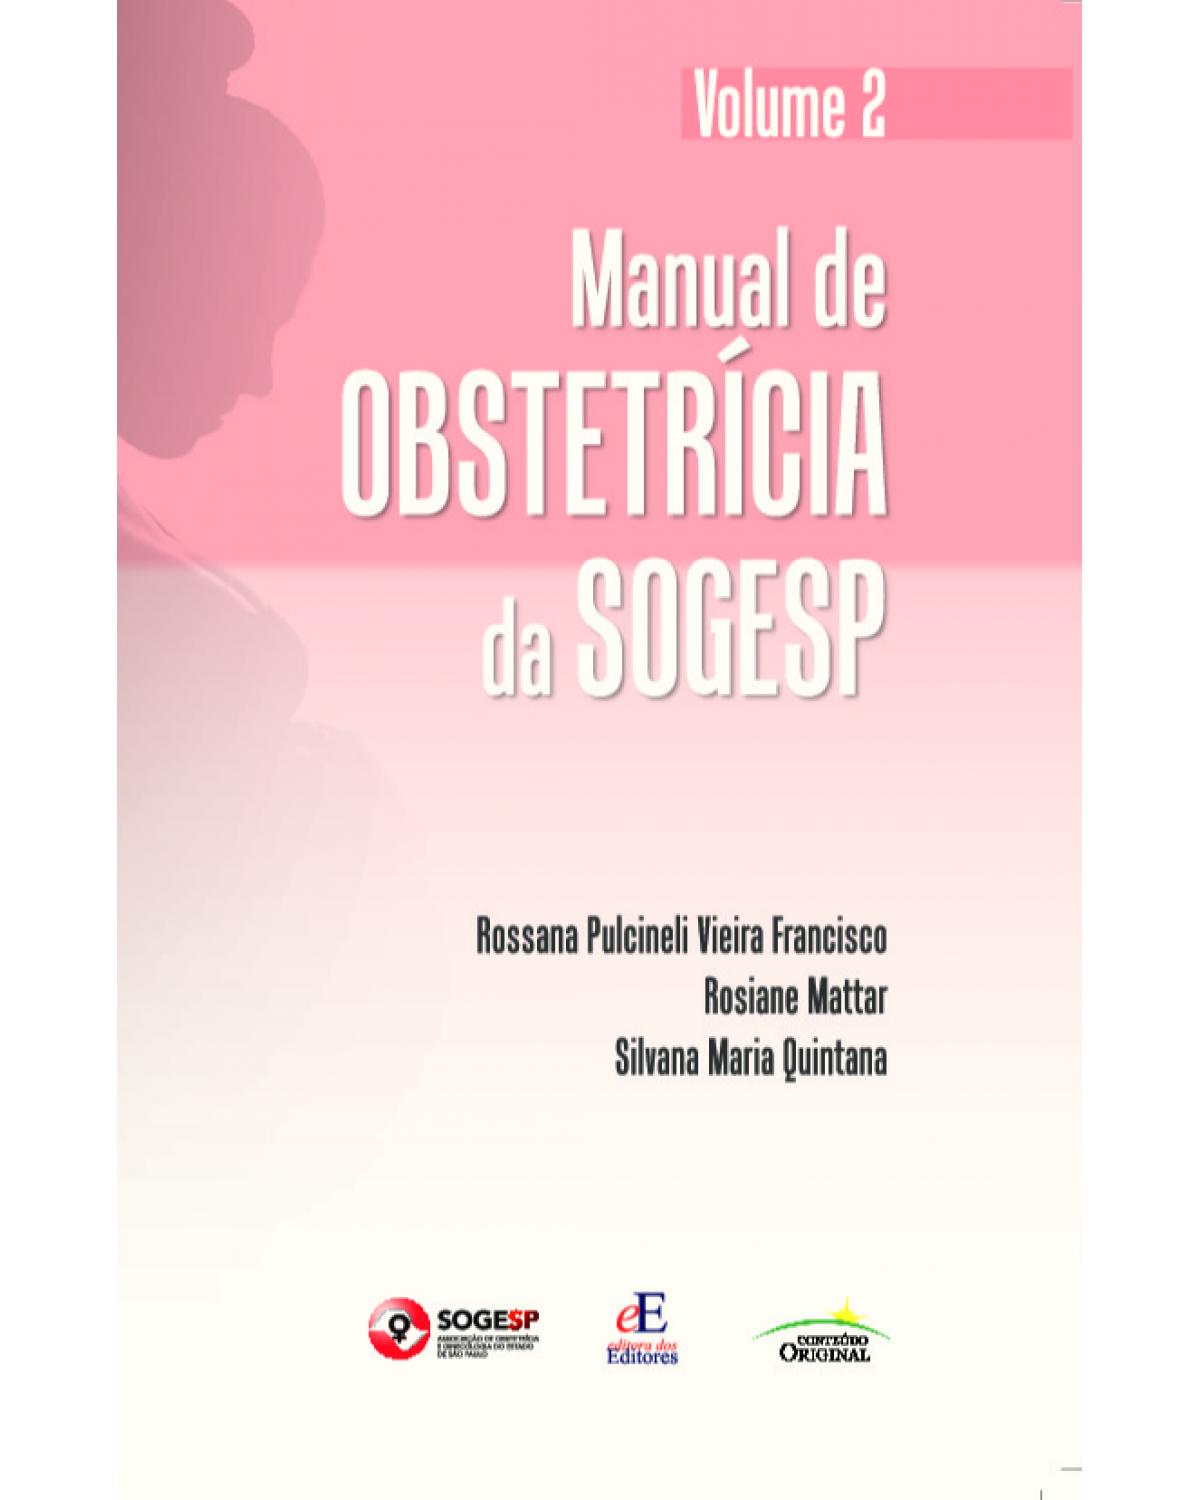 Manual de obstetrícia da SOGESP - Volume 2: Volume 2 - 1ª Edição | 2021